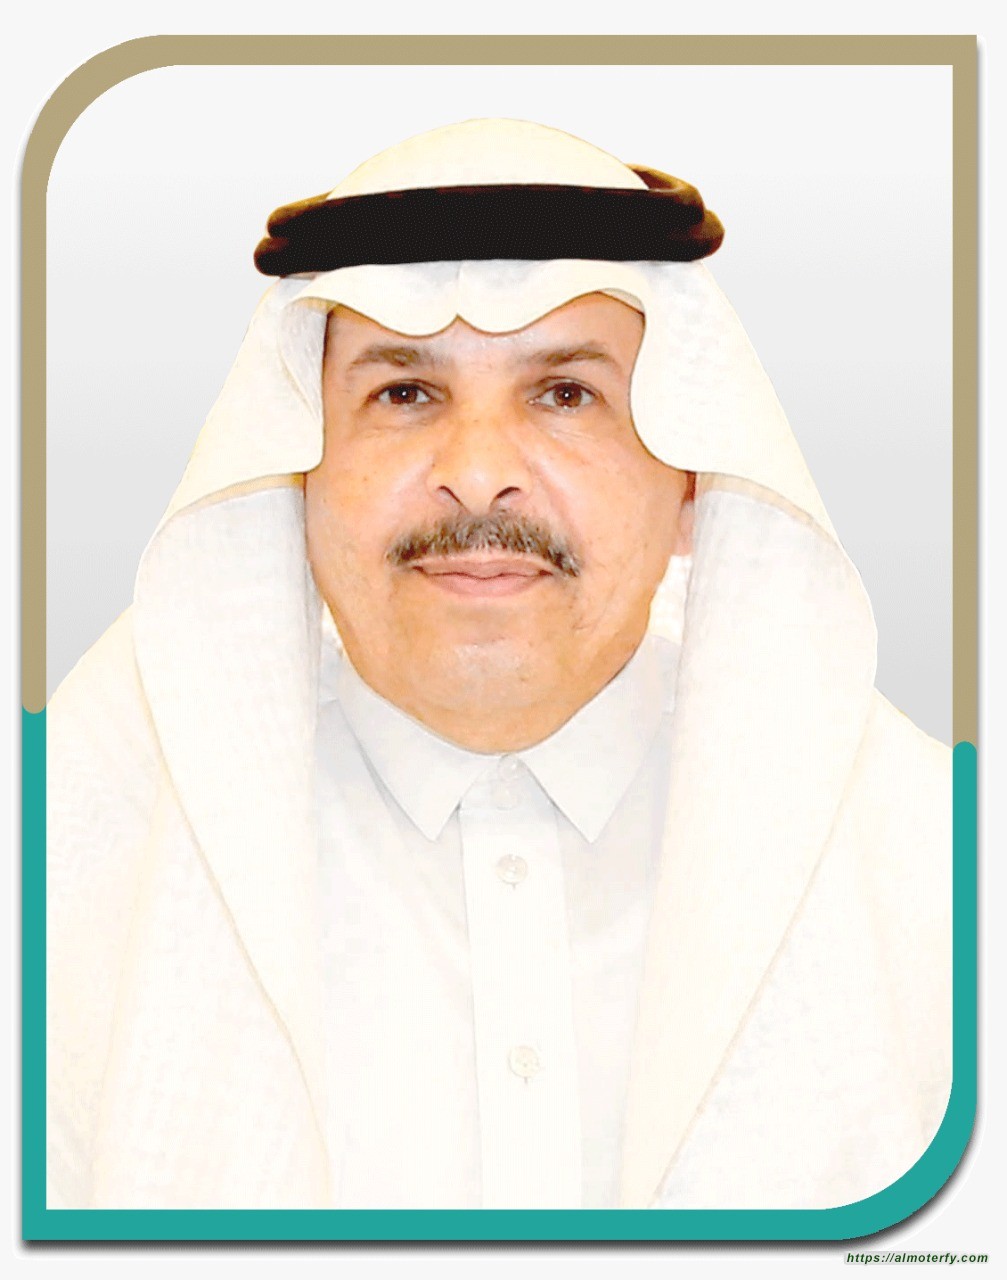 "تعليم الرياض" يدعو منسوباته للترشح لجائزة الأميرة نورة بنت عبدالرحمن للتميز النسائي